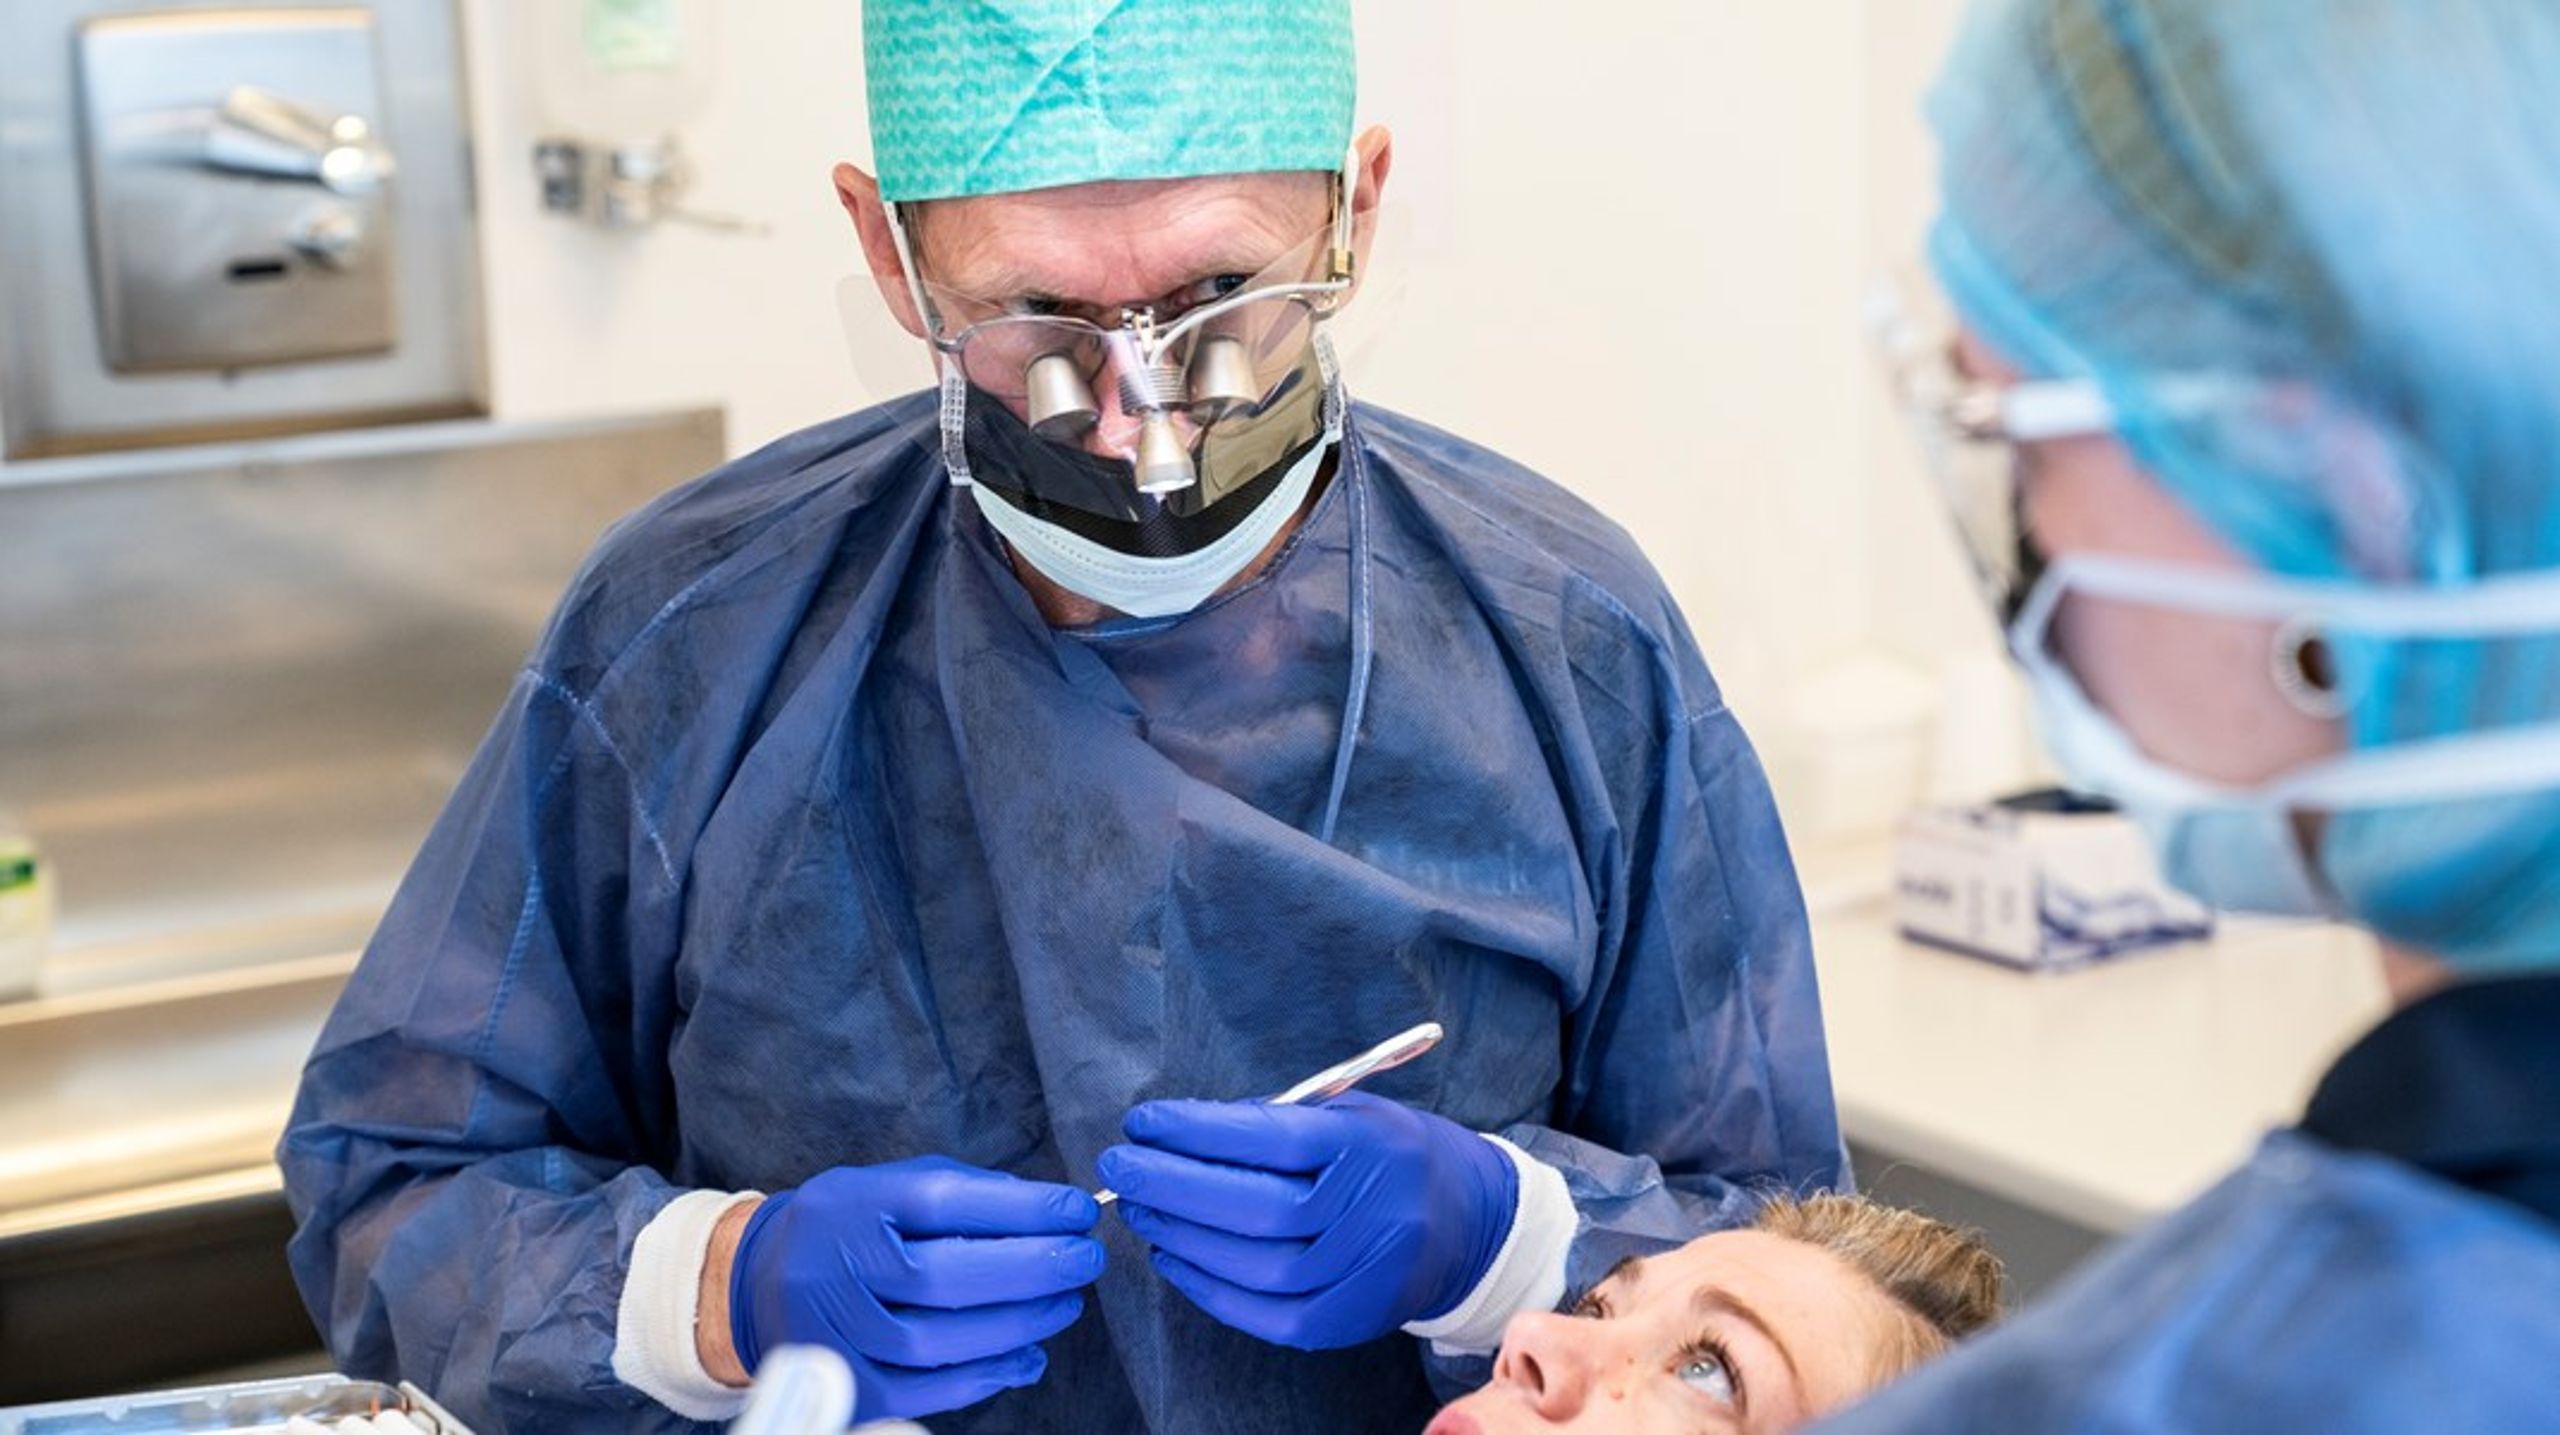 Tandlægeuddannelsen bør tilrettelægges efter europæisk model, skriver fire tandlæger.&nbsp;